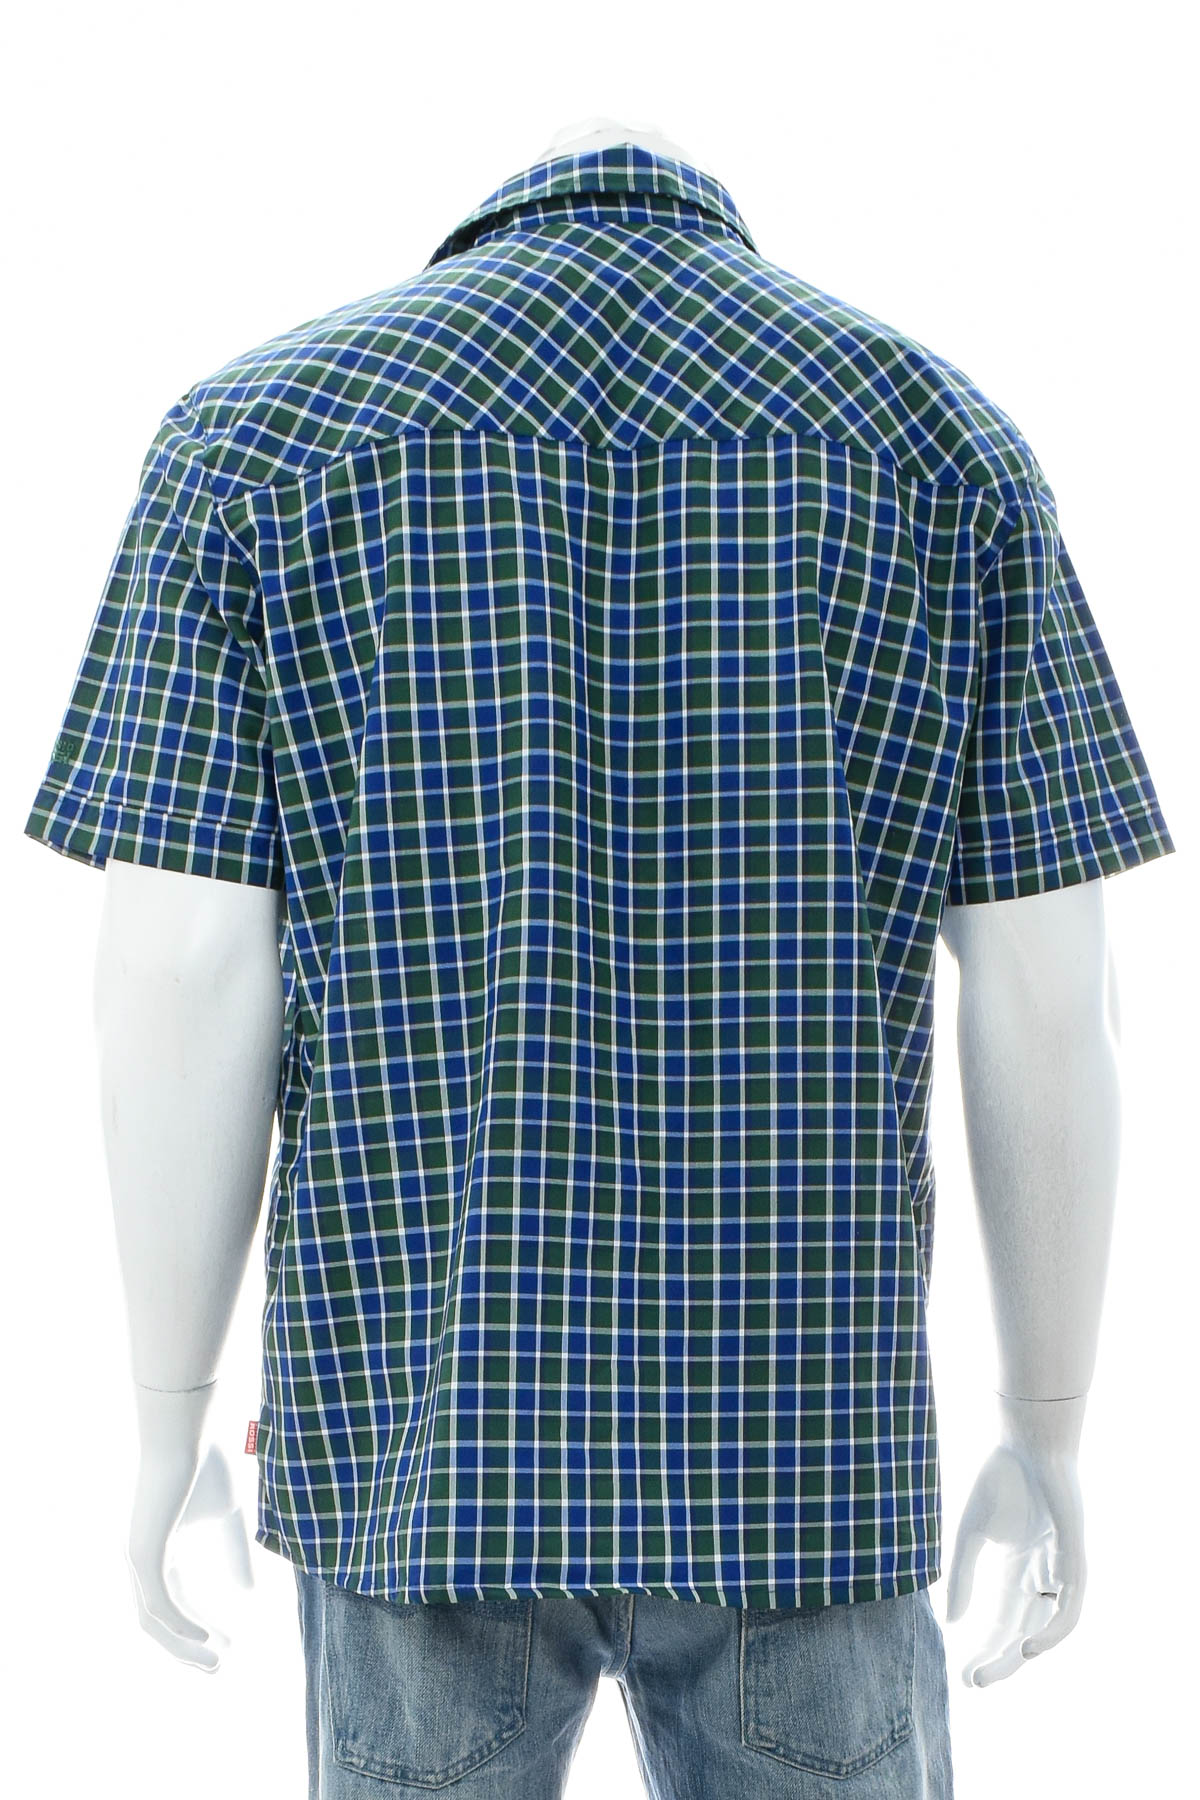 Ανδρικό πουκάμισο - Vittorio Rossi - 1